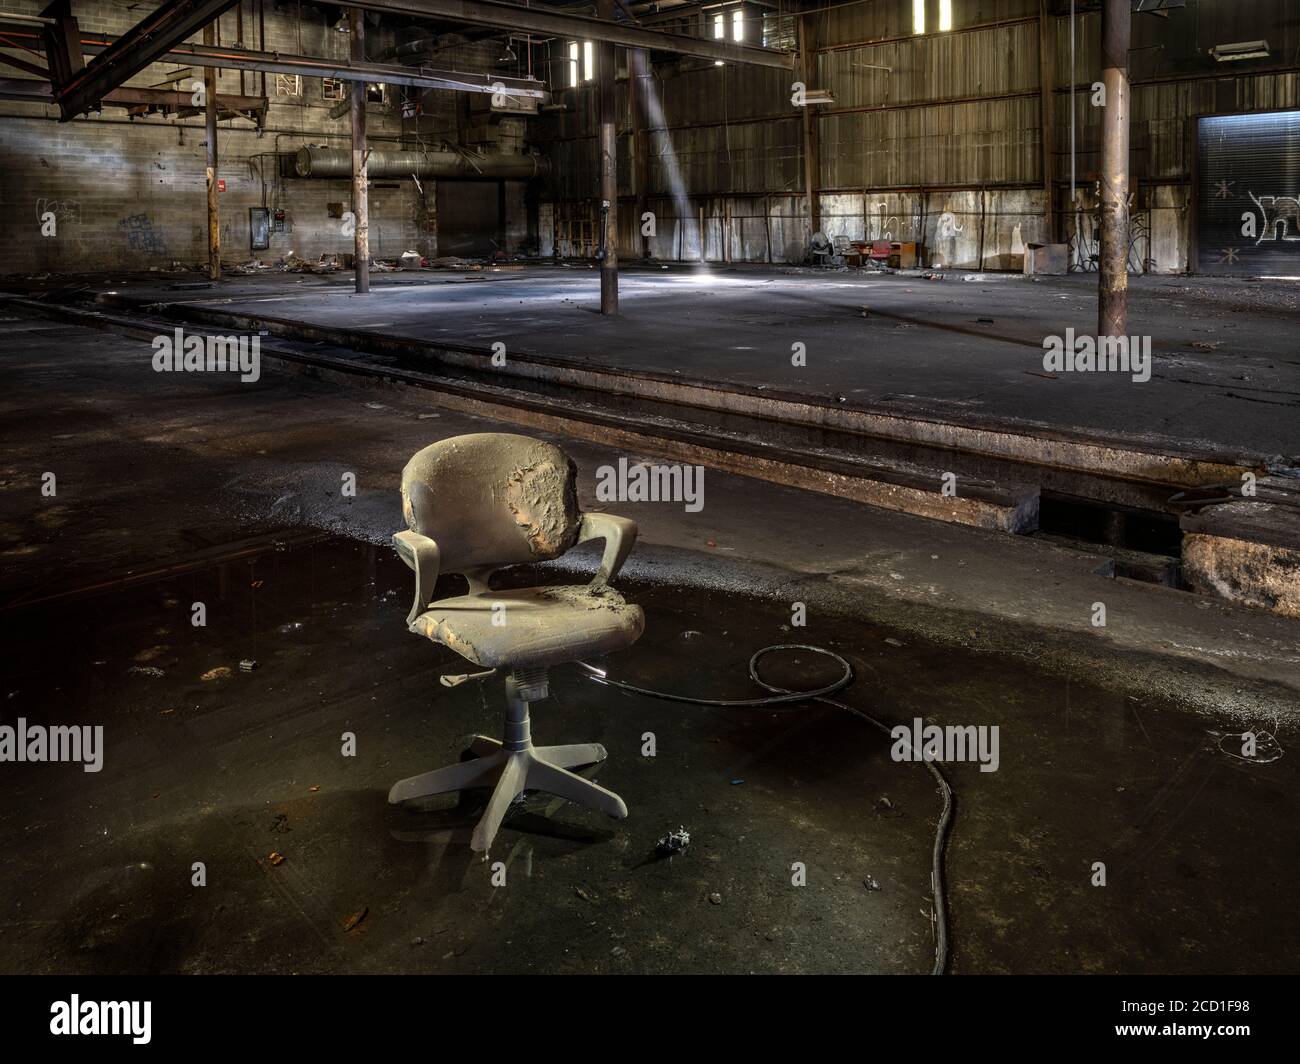 Ancienne chaise sale assise dans l'eau à l'intérieur d'une usine industrielle abandonnée Banque D'Images